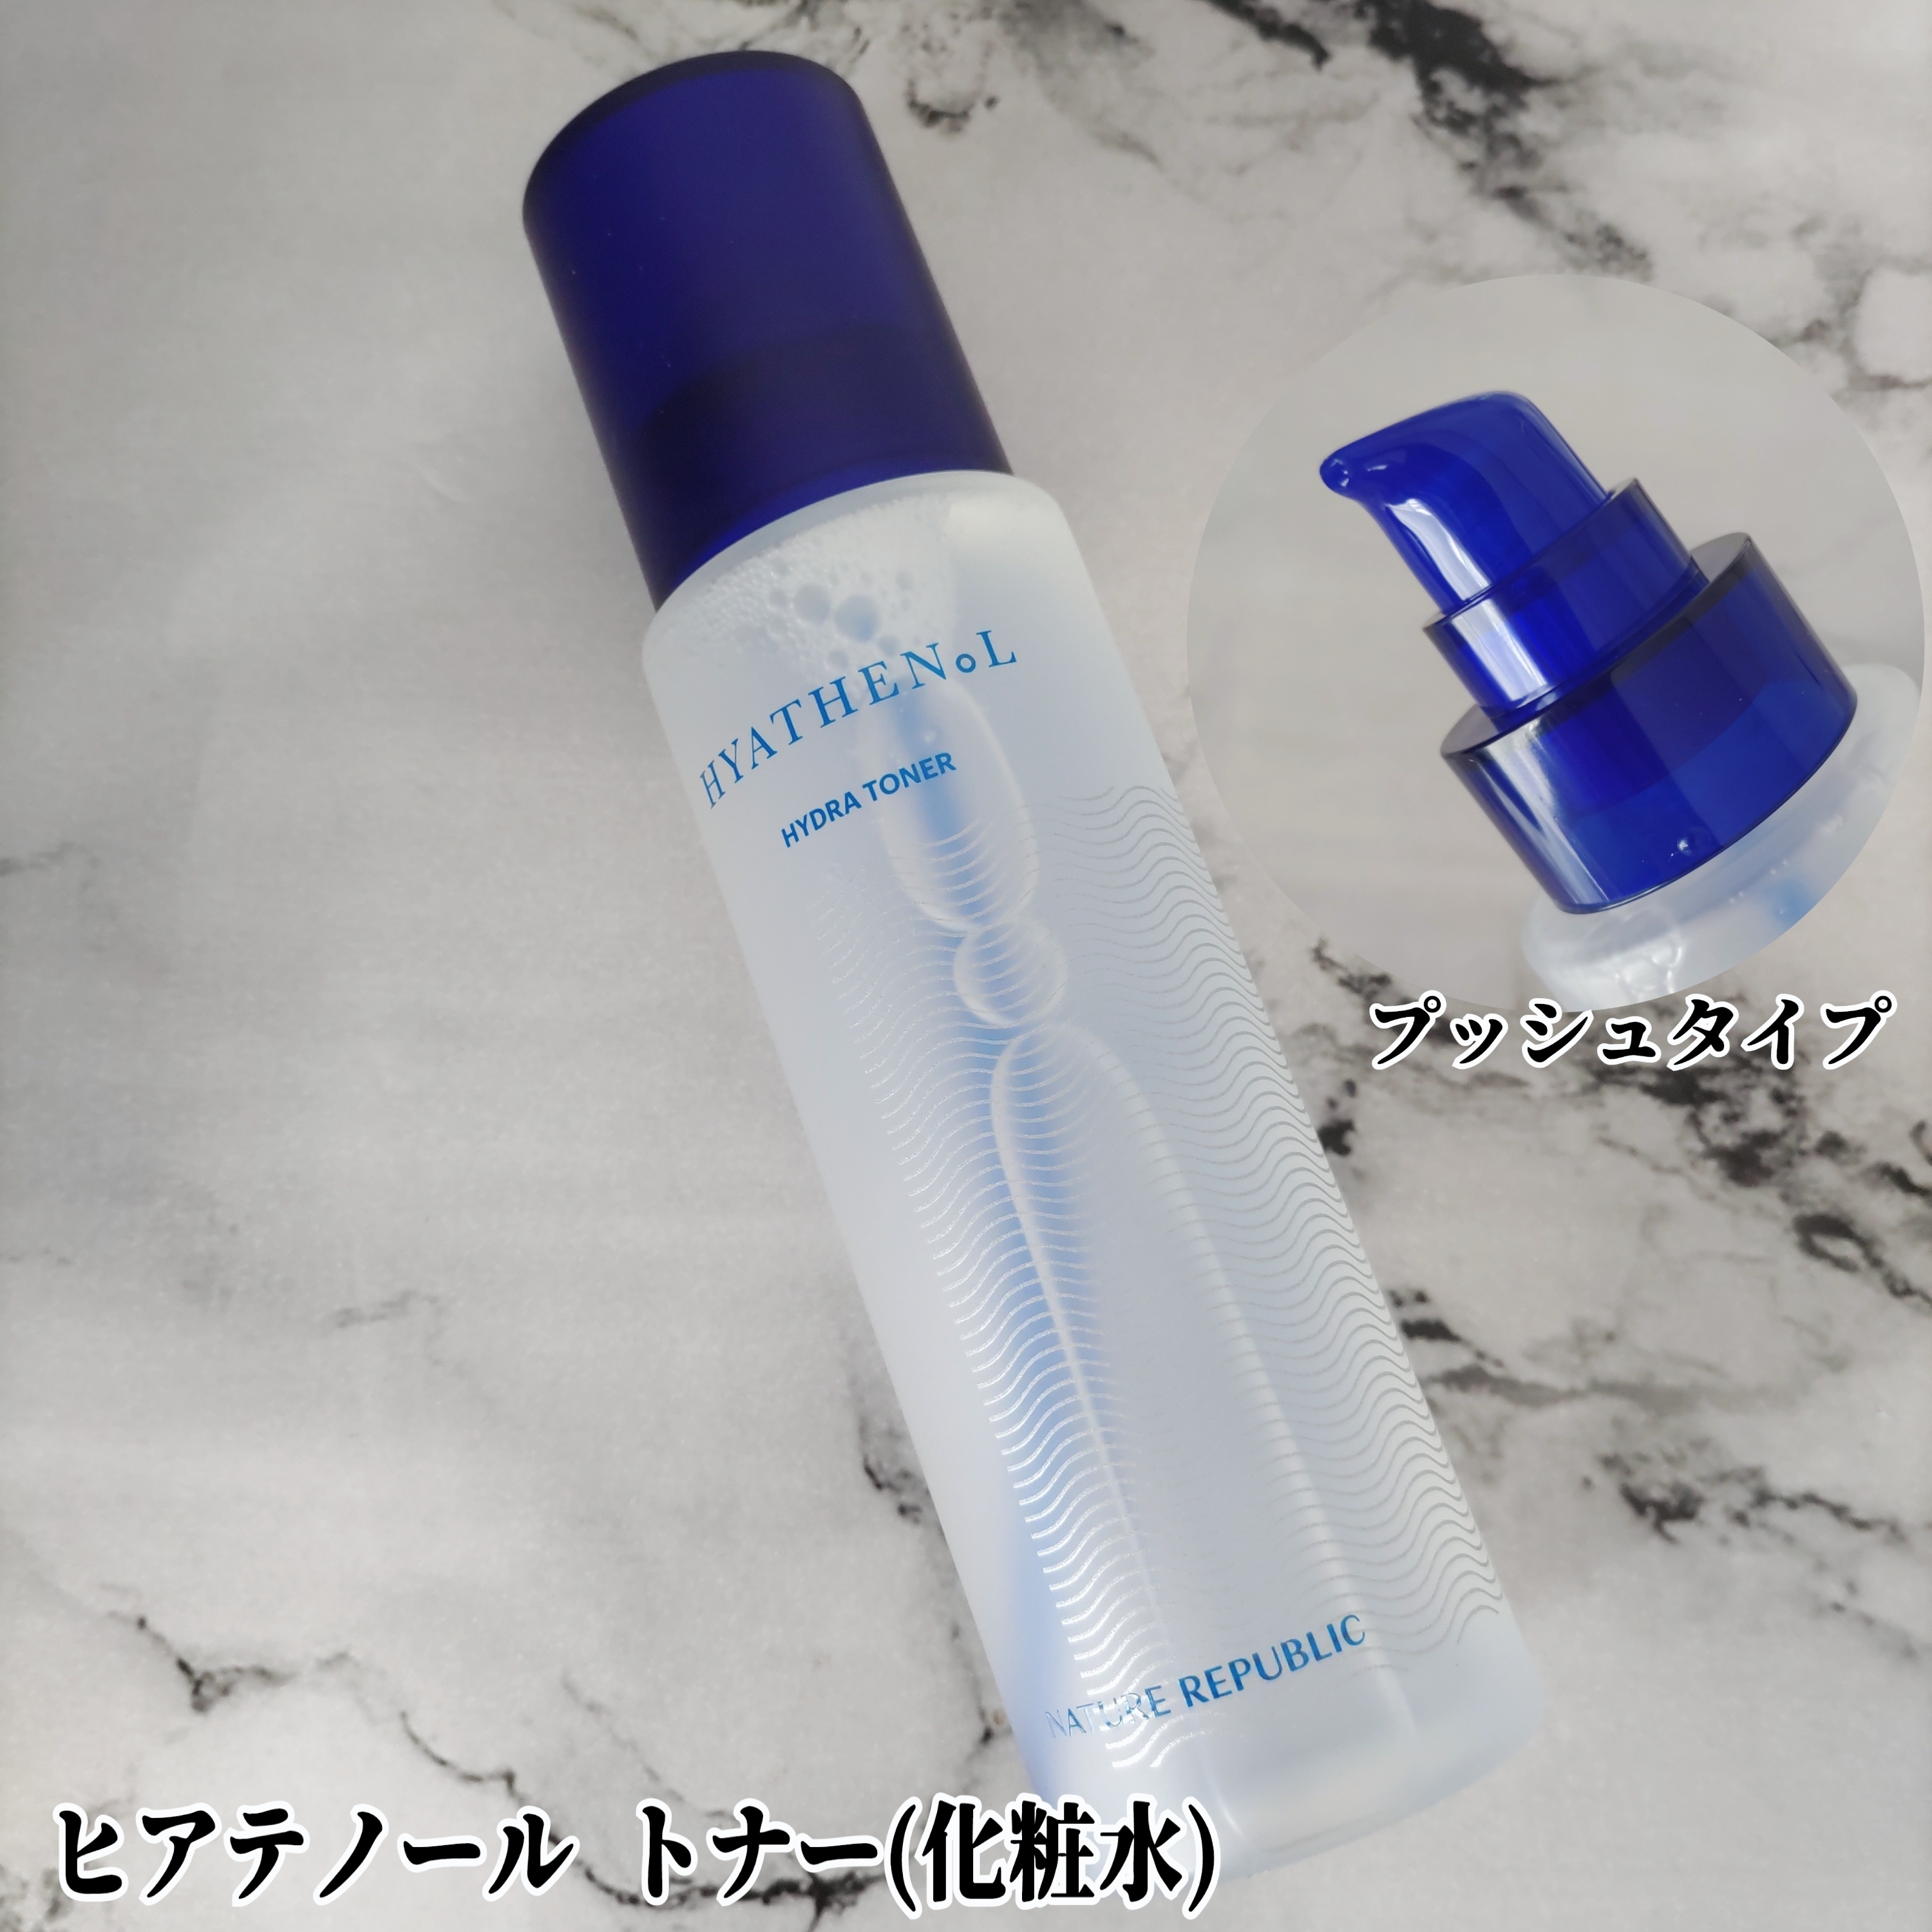 ネイチャーリパブリック ヒアテノール トナー(化粧水)を使ったYuKaRi♡さんのクチコミ画像2